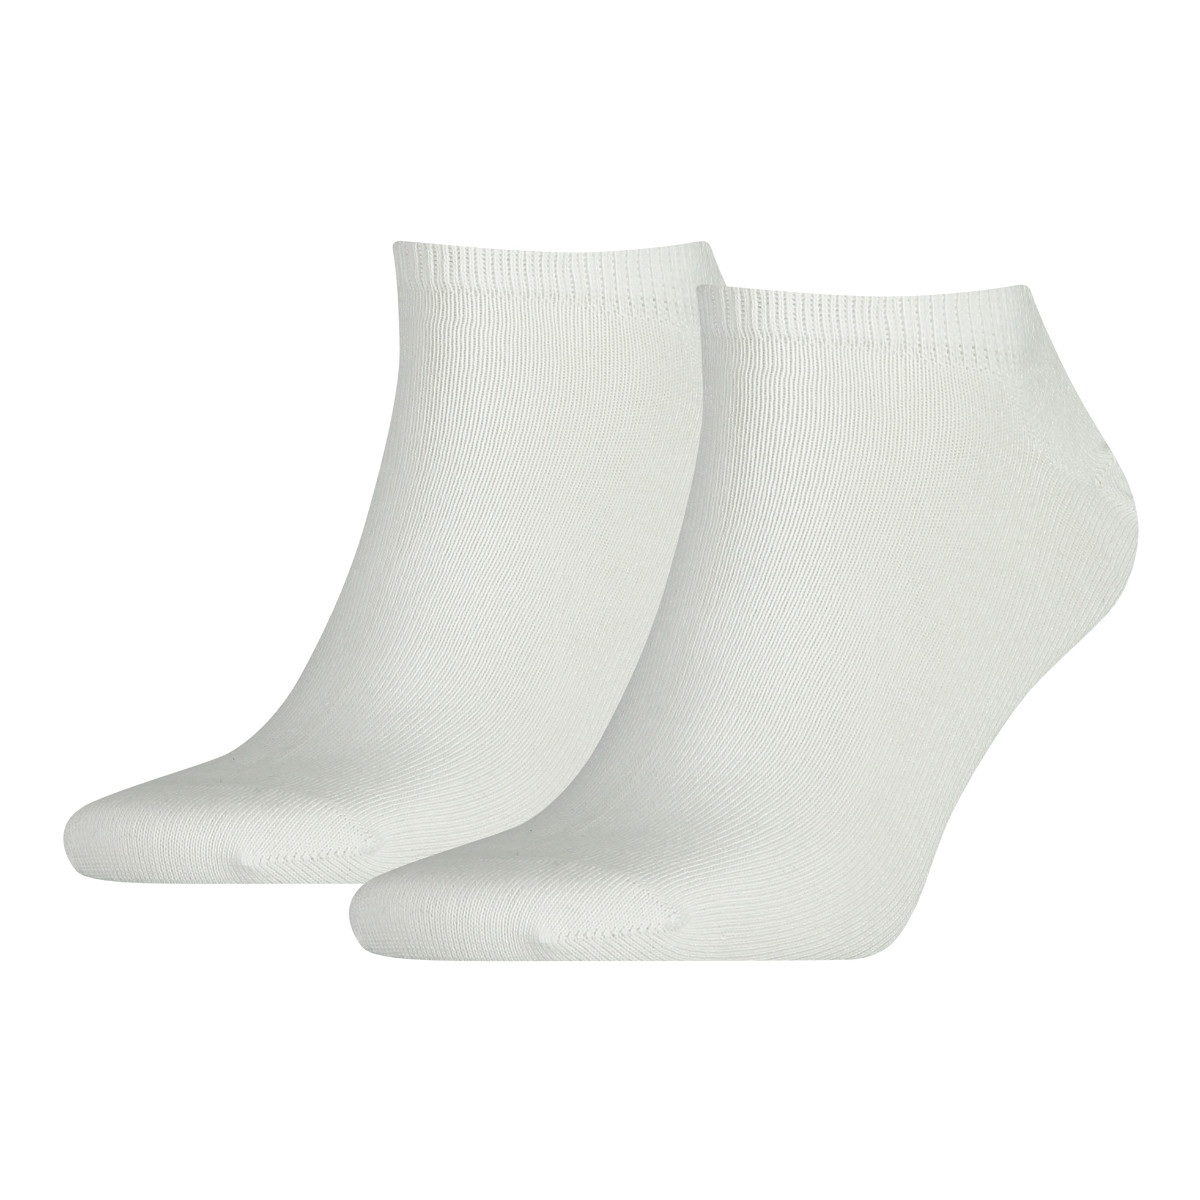 Undertøj Herre Sportsstrømper Tommy Hilfiger Sneaker 2PPK Socks Hvid